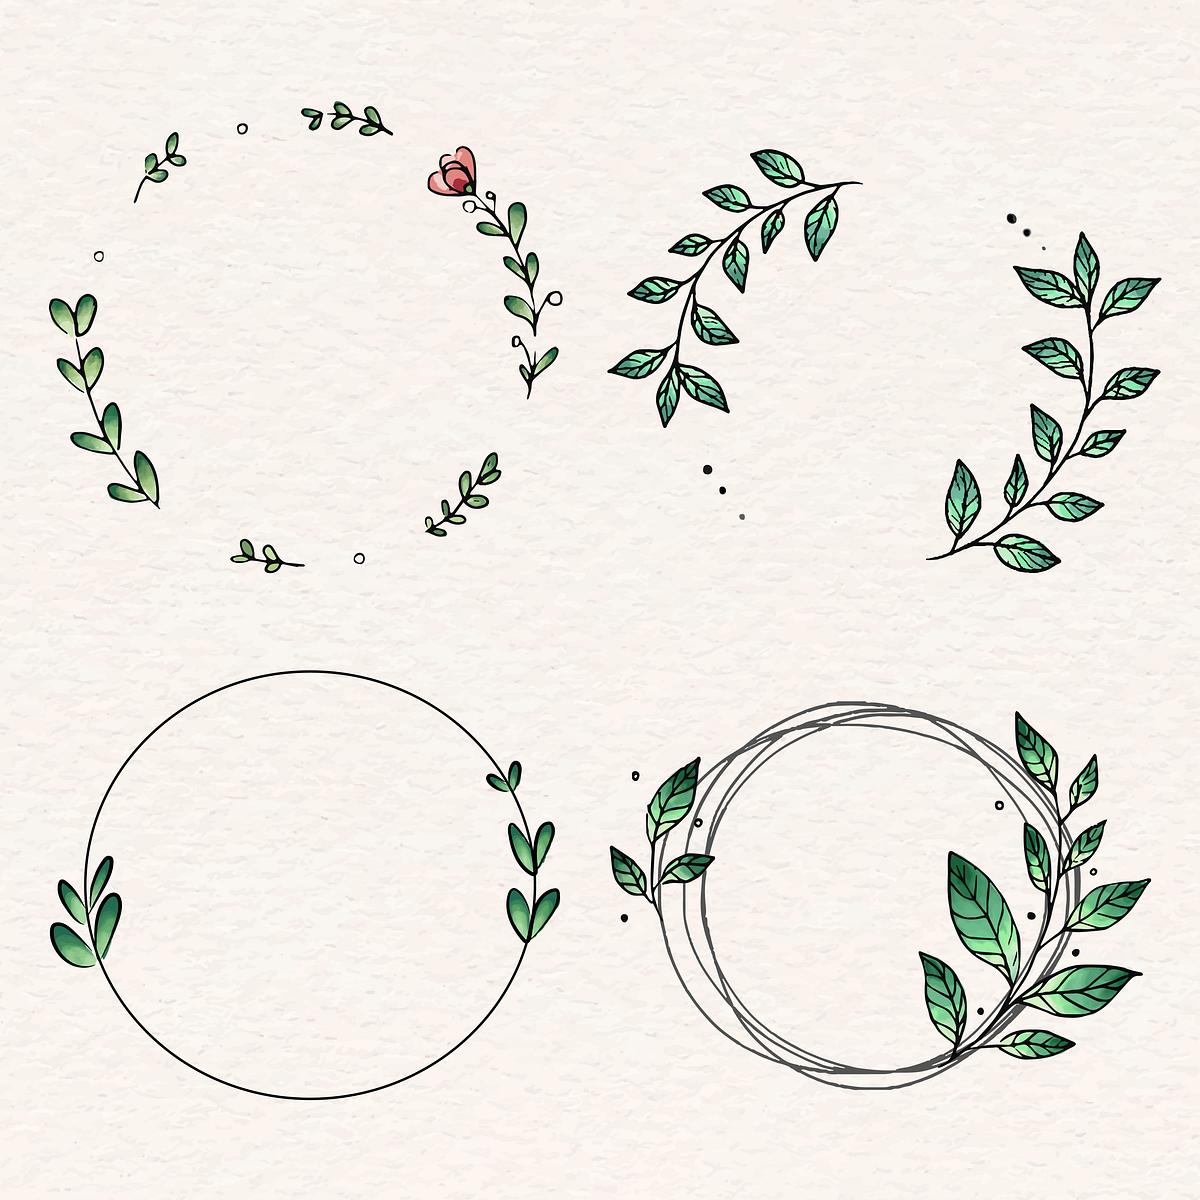 Download Laurel wreath design set | Royalty free stock illustration ...